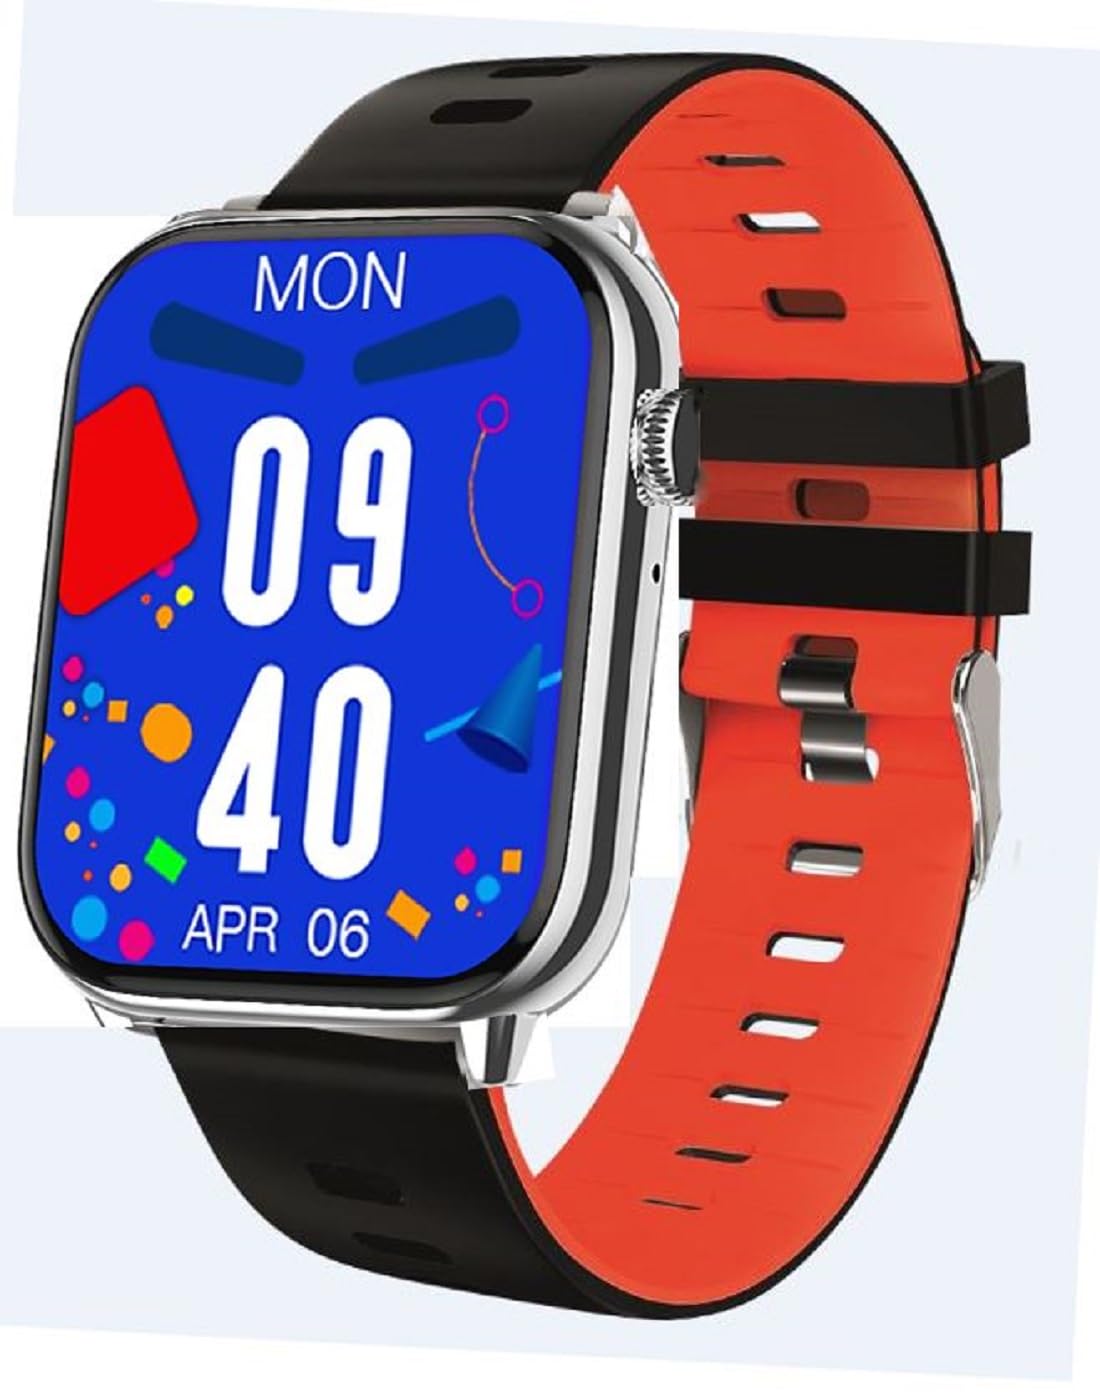 Atlanta Fitnesstracker mit Herzfrequenz Puls Blutdruck EKG Freisprechen Schlaf Schritte Farbdisplay Smartwatch Armband Uhr - 9724//71 (Schwarz/Rot)